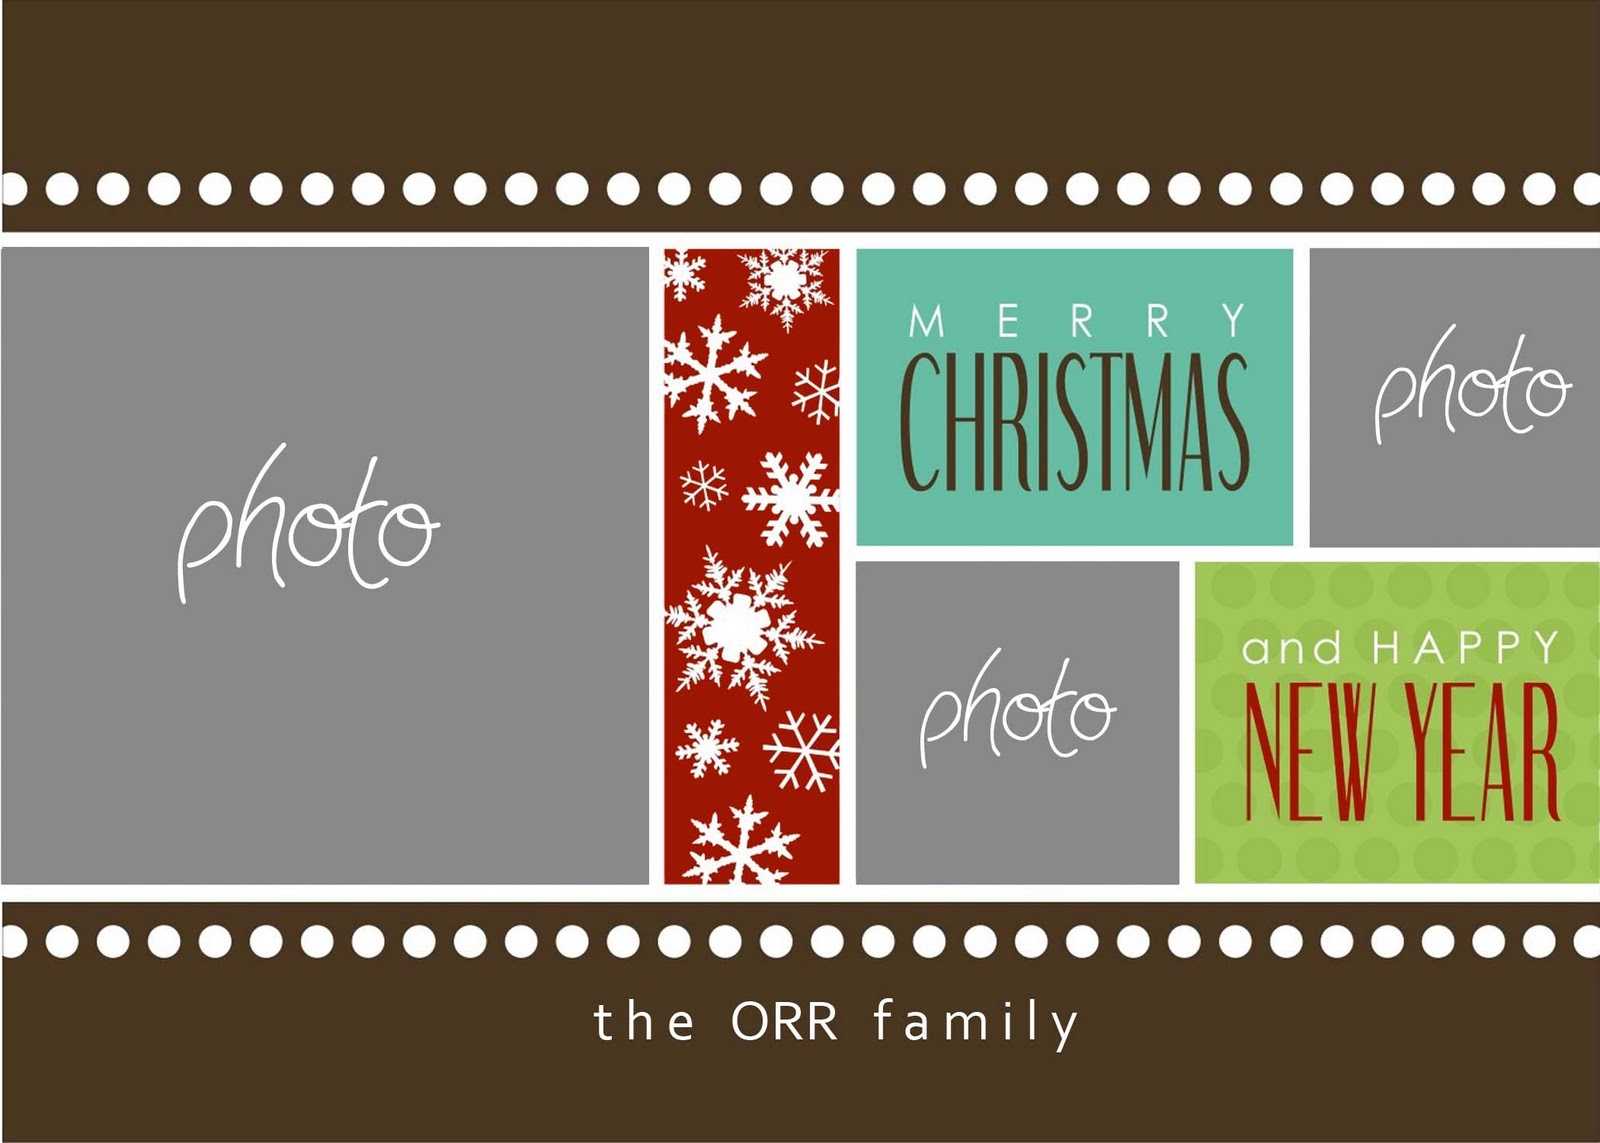 Christmas Cards Templates Photoshop ] - Christmas Card With Christmas Photo Card Templates Photoshop